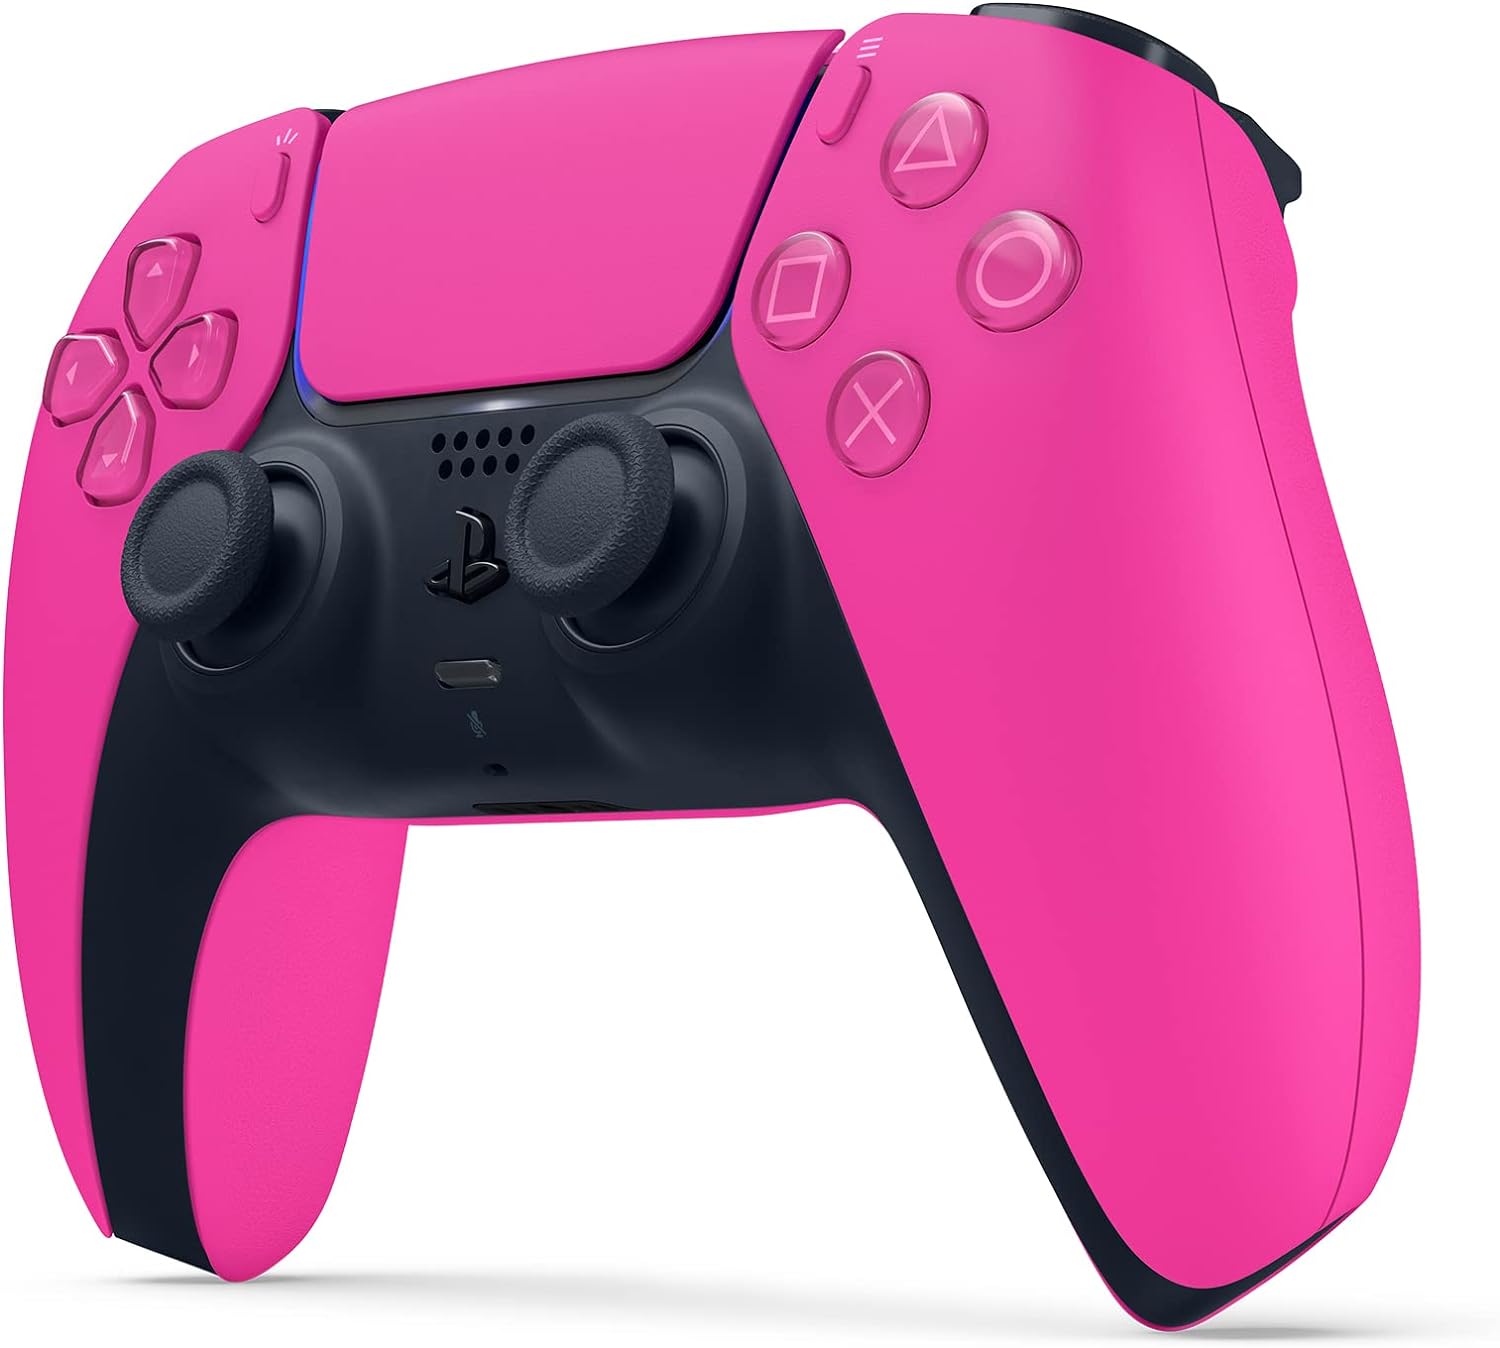 PS5 controller Nova Pink